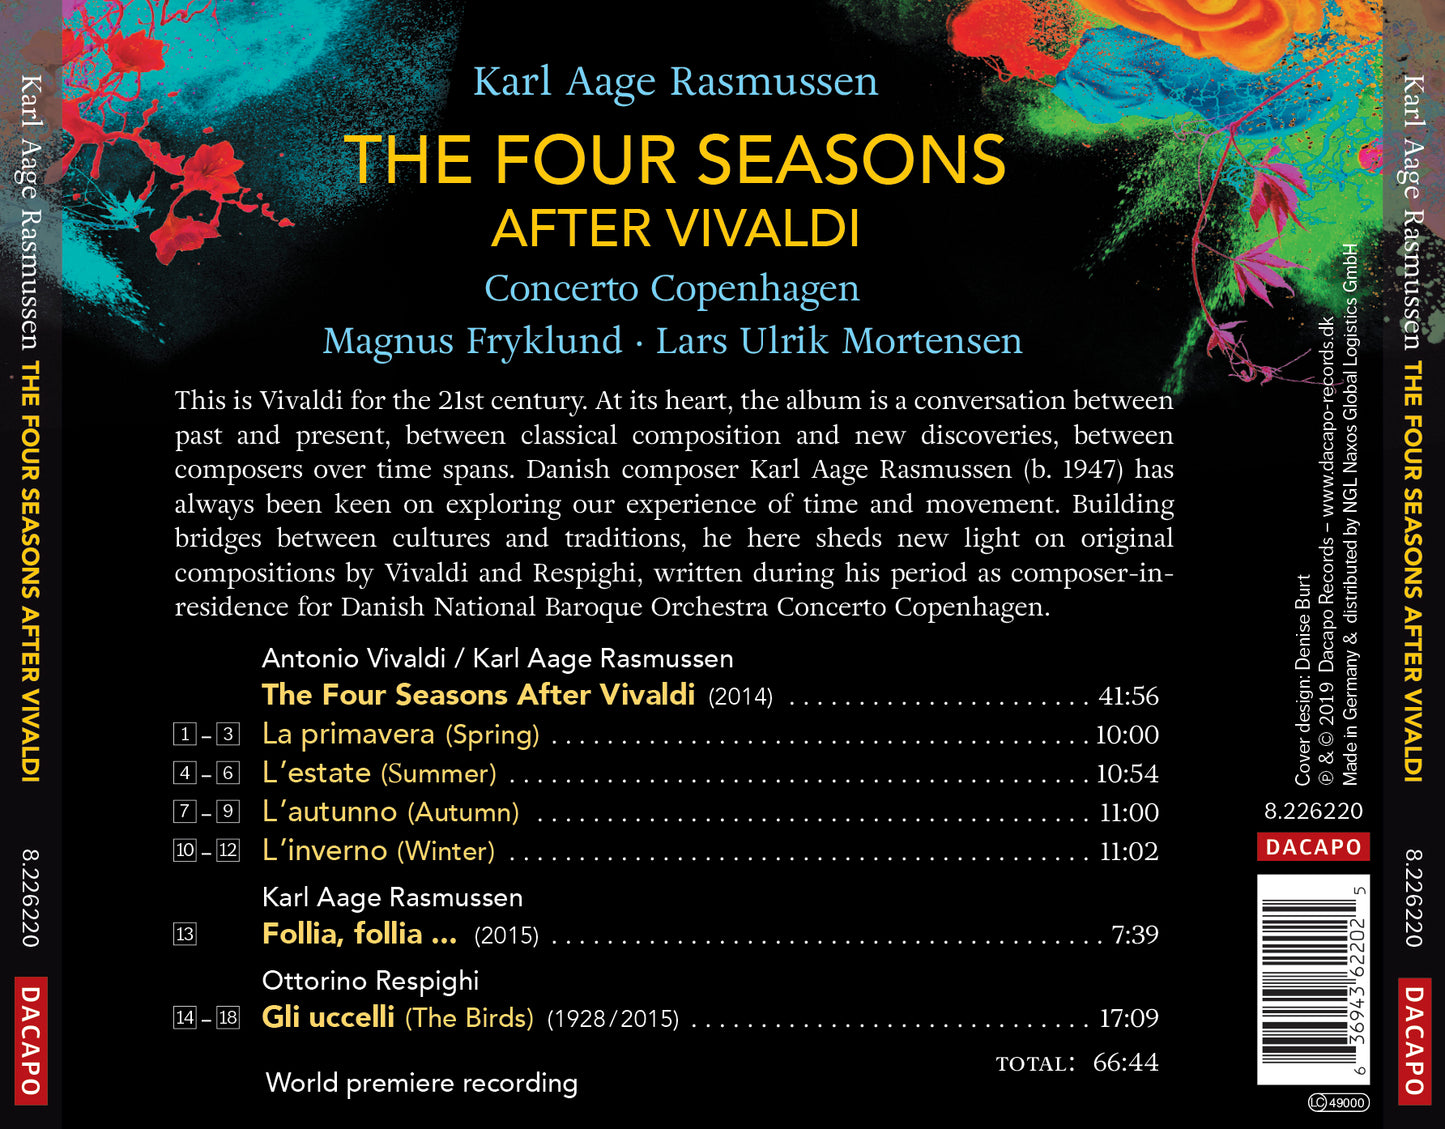 The Four Seasons After Vivaldi / Karl Aage Rasmussen